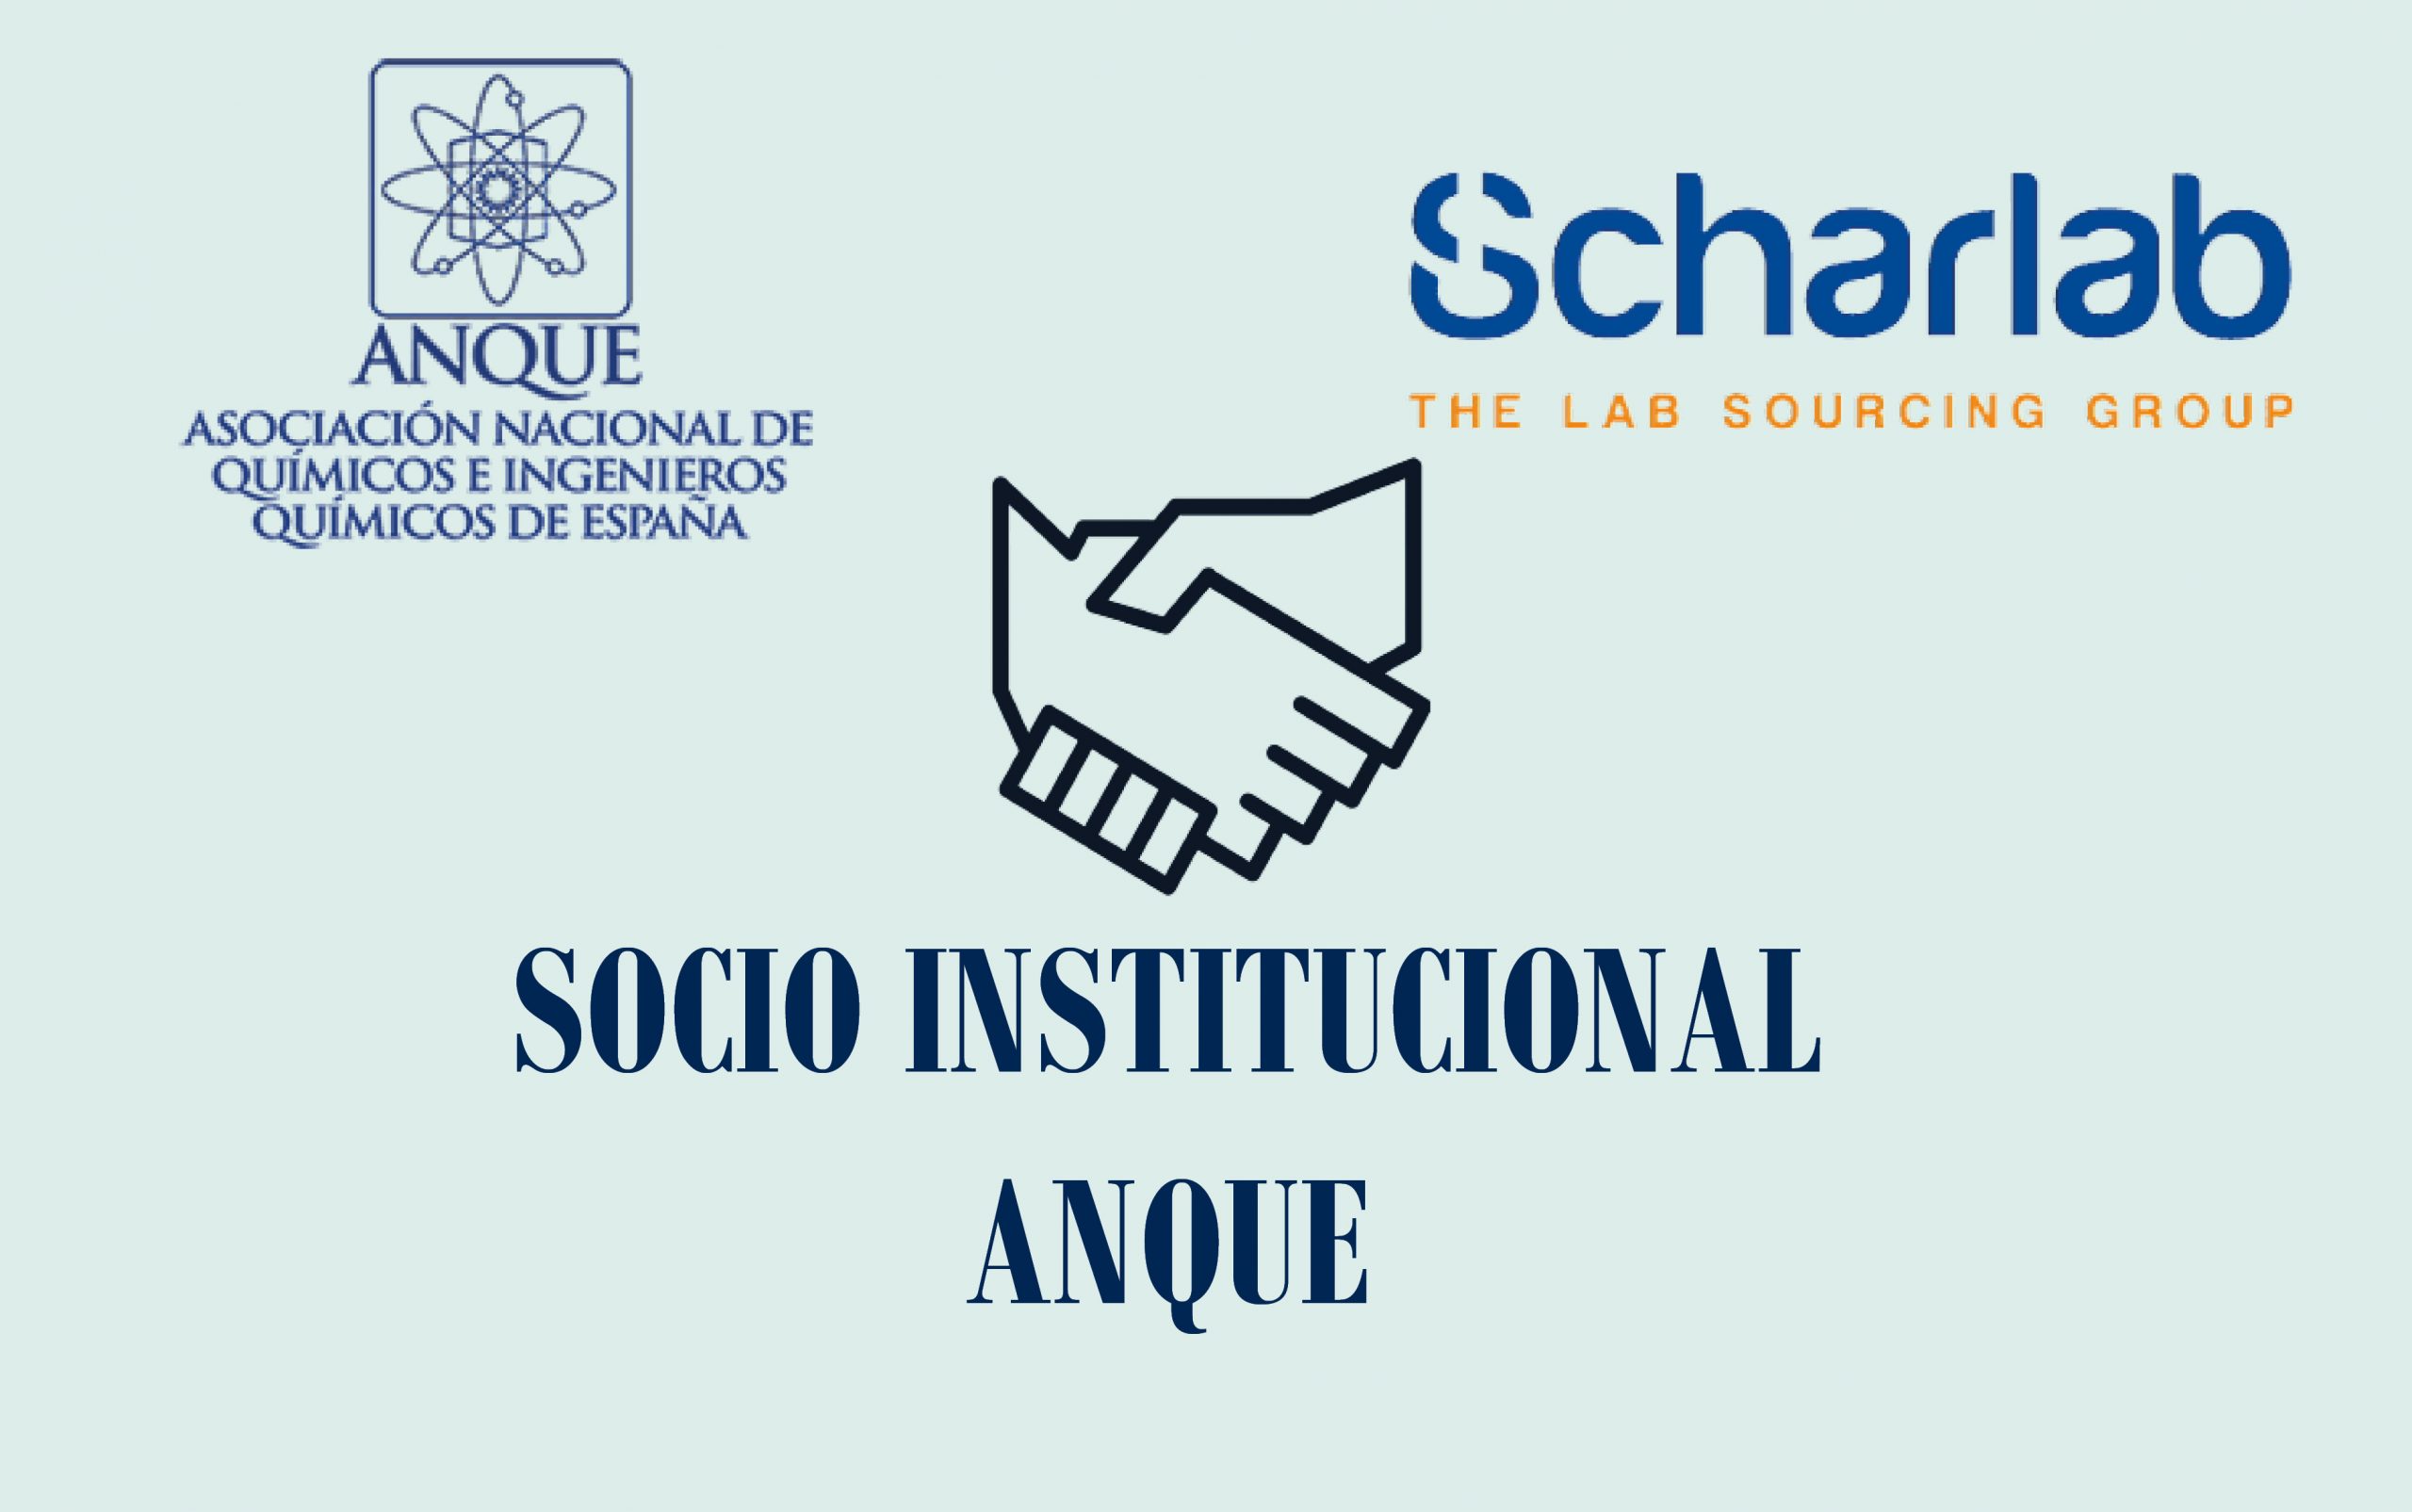 Scharlab S.L. nuevo socio institucional de ANQUE.